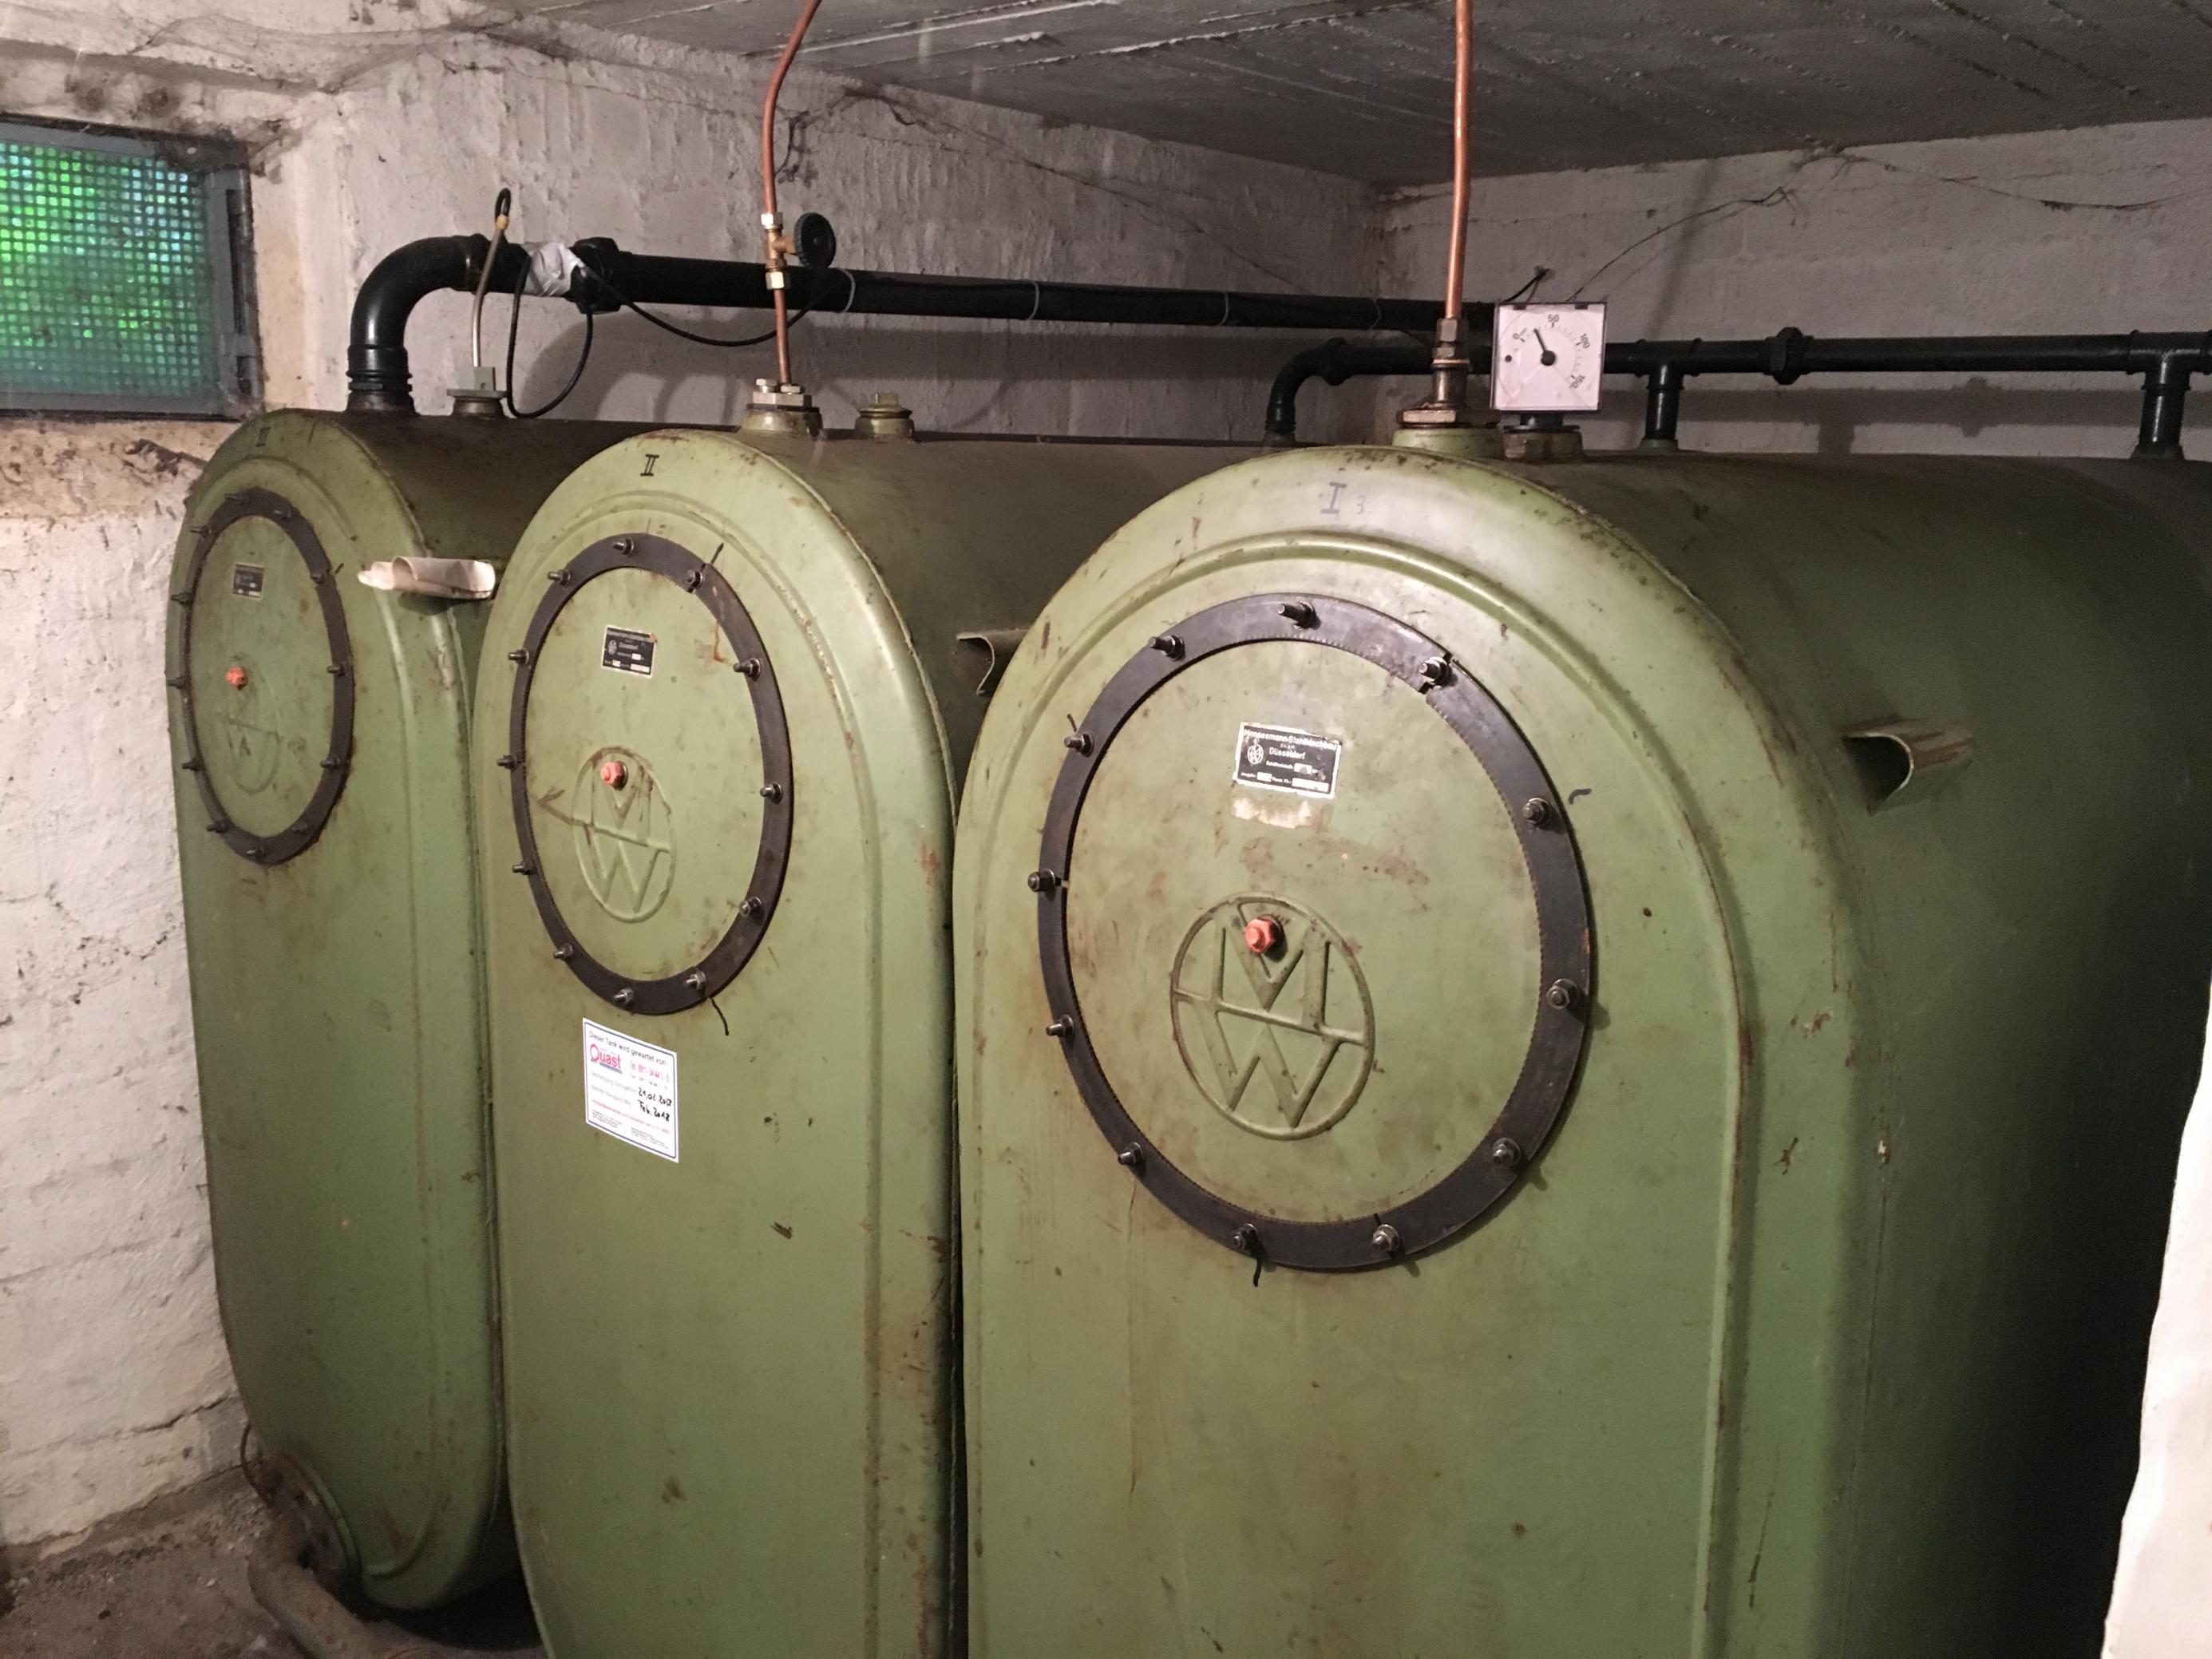 Ein dreifacher Öltank auf oliv-grünem Stahl in einem Kellerraum. Längst sind solche Anlagen ein Sanierungsfall. In Zukunft könnte eine solche Anlage durch eine Wärmepumpe ersetzt werden, dann lassen sich Wärme und Duschwasser mit Strom aus erneuerbaren Quellen erzeugen.